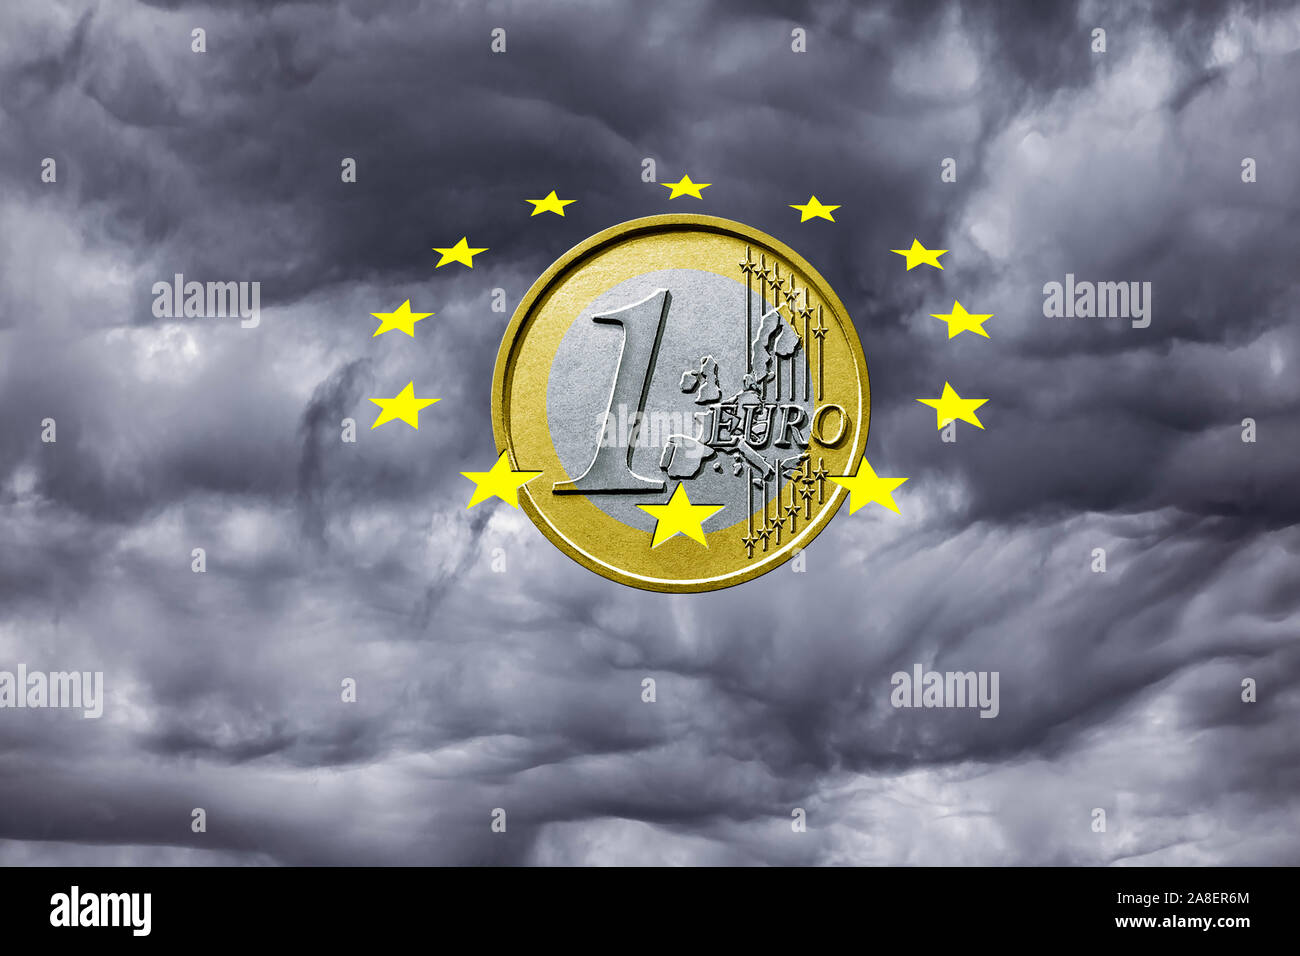 Euro-Rettungsschirm, dient dem Schutz der Waehrung vor Krisen, Gewitter, Regenwolken, Euro, Euro-Sterne, Stock Photo